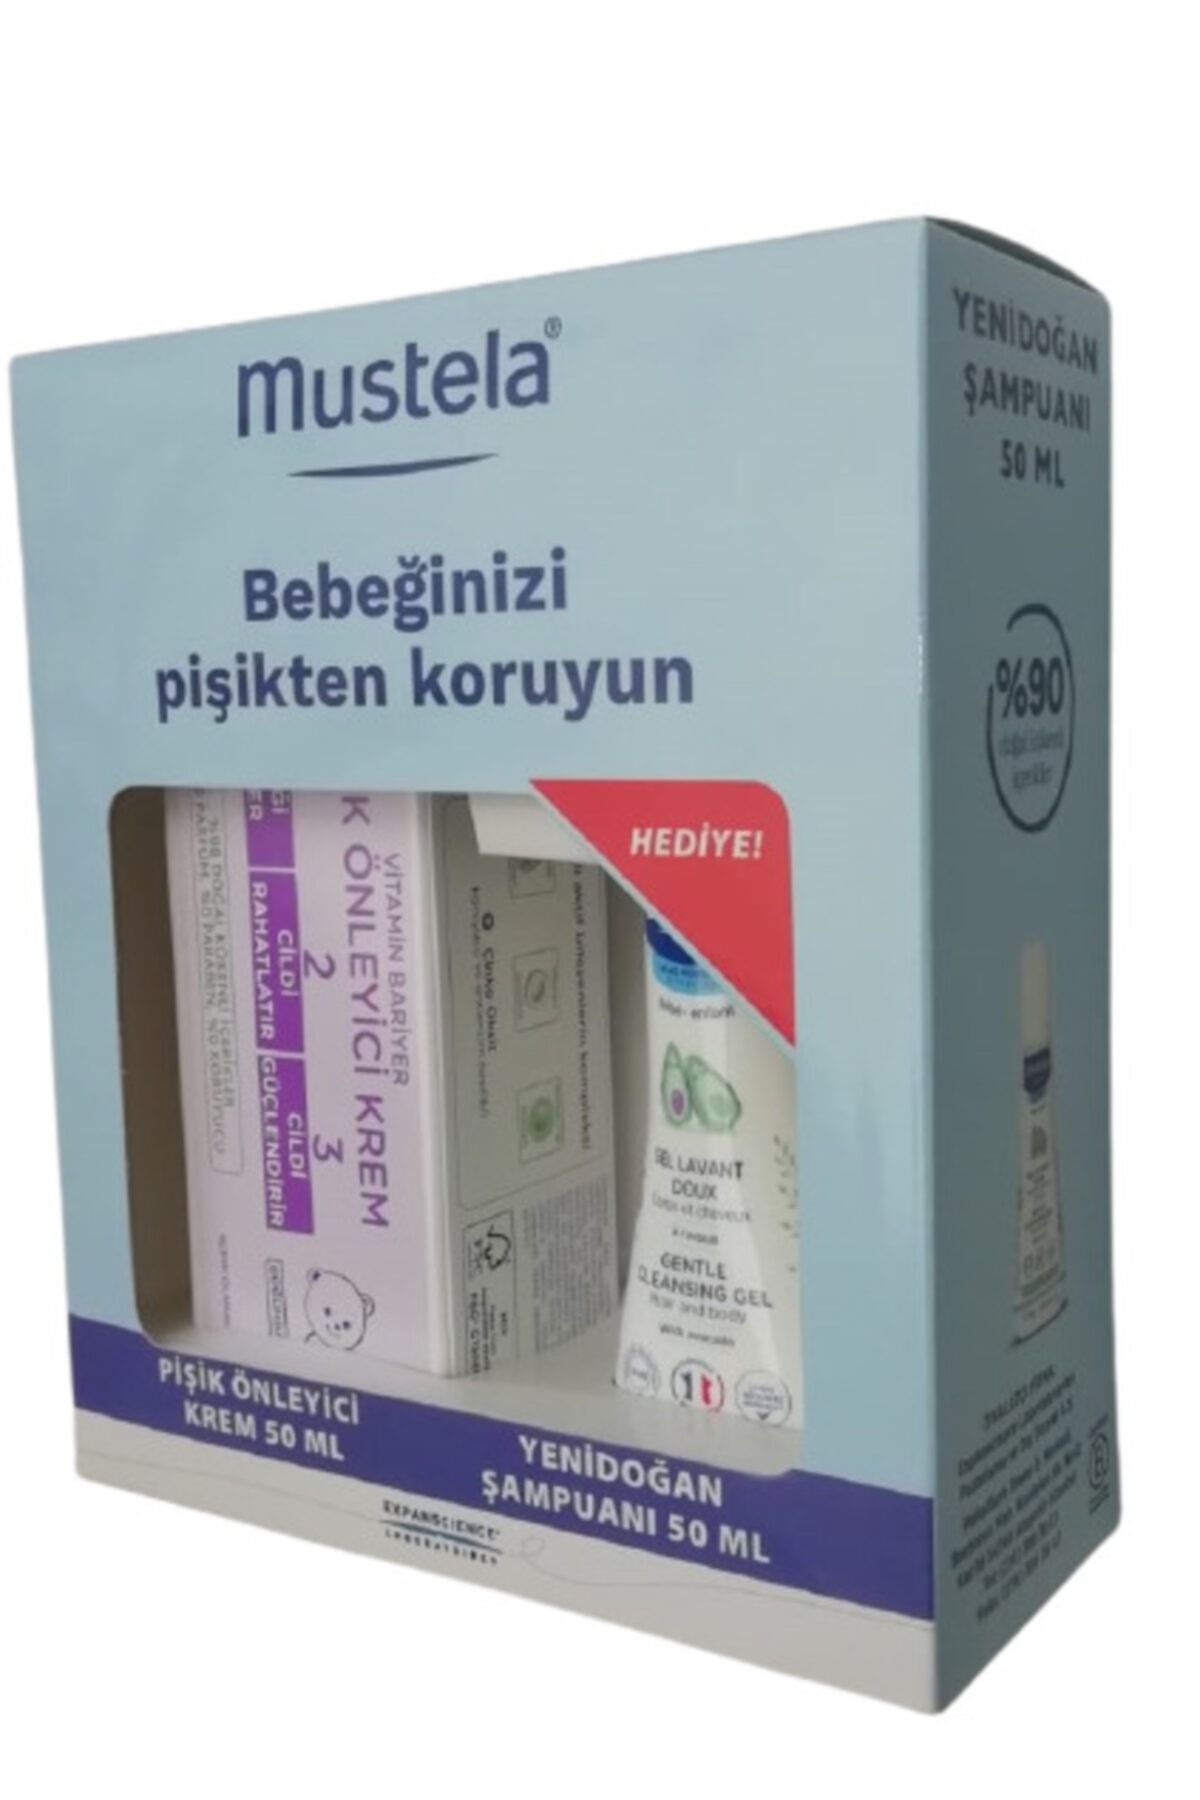 Mustela Vitamin Barrier Pişik Önleyici Krem 50 ml +Yenidoğan Şampuanı 50 ml